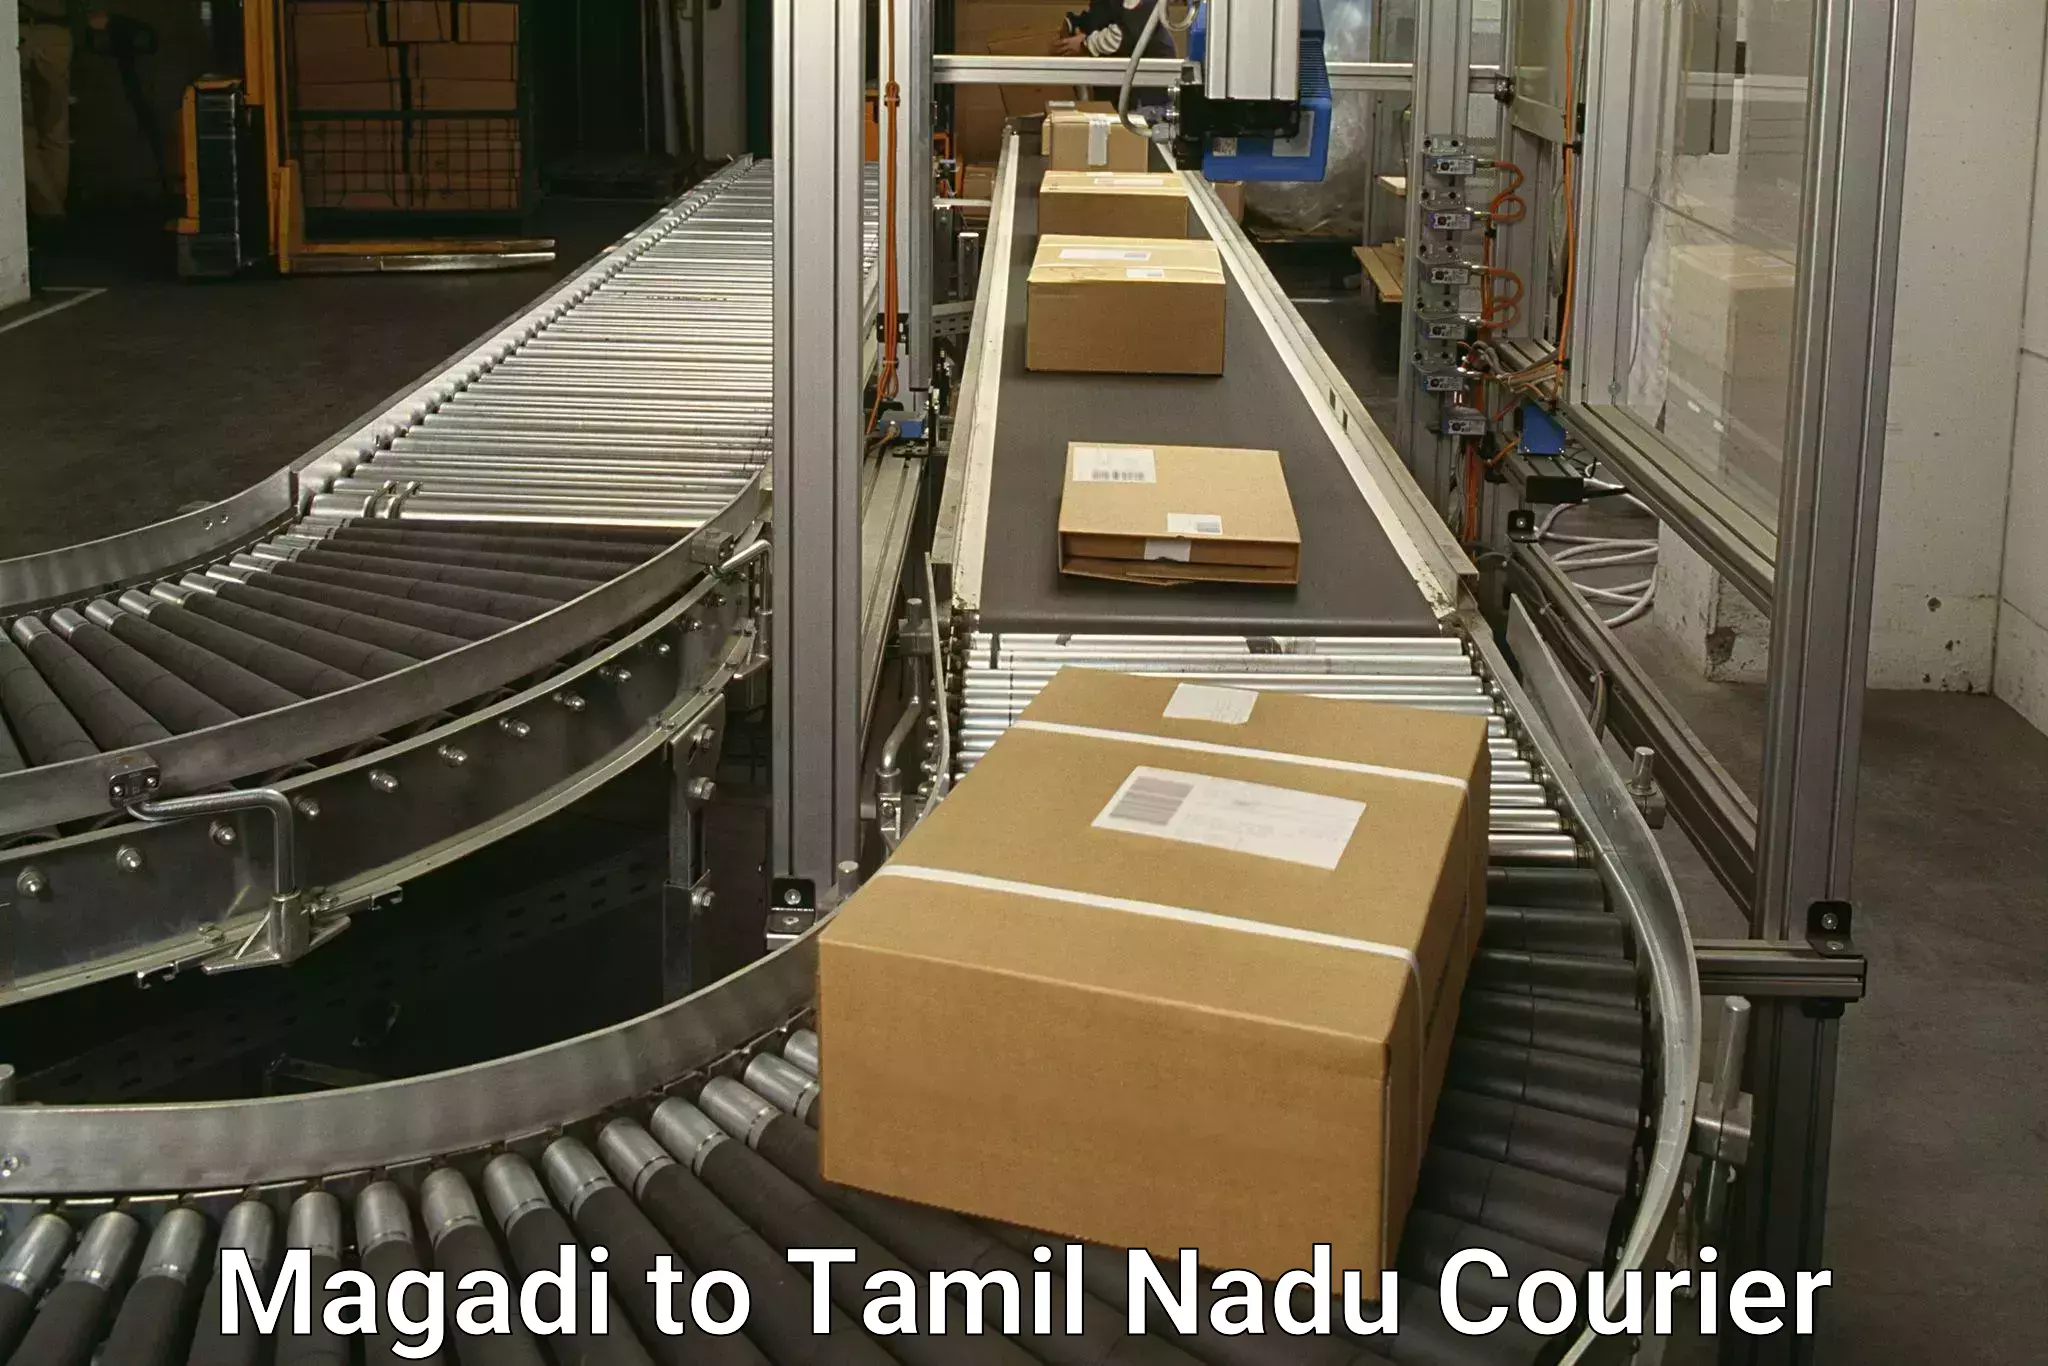 Courier tracking online Magadi to Kodumudi